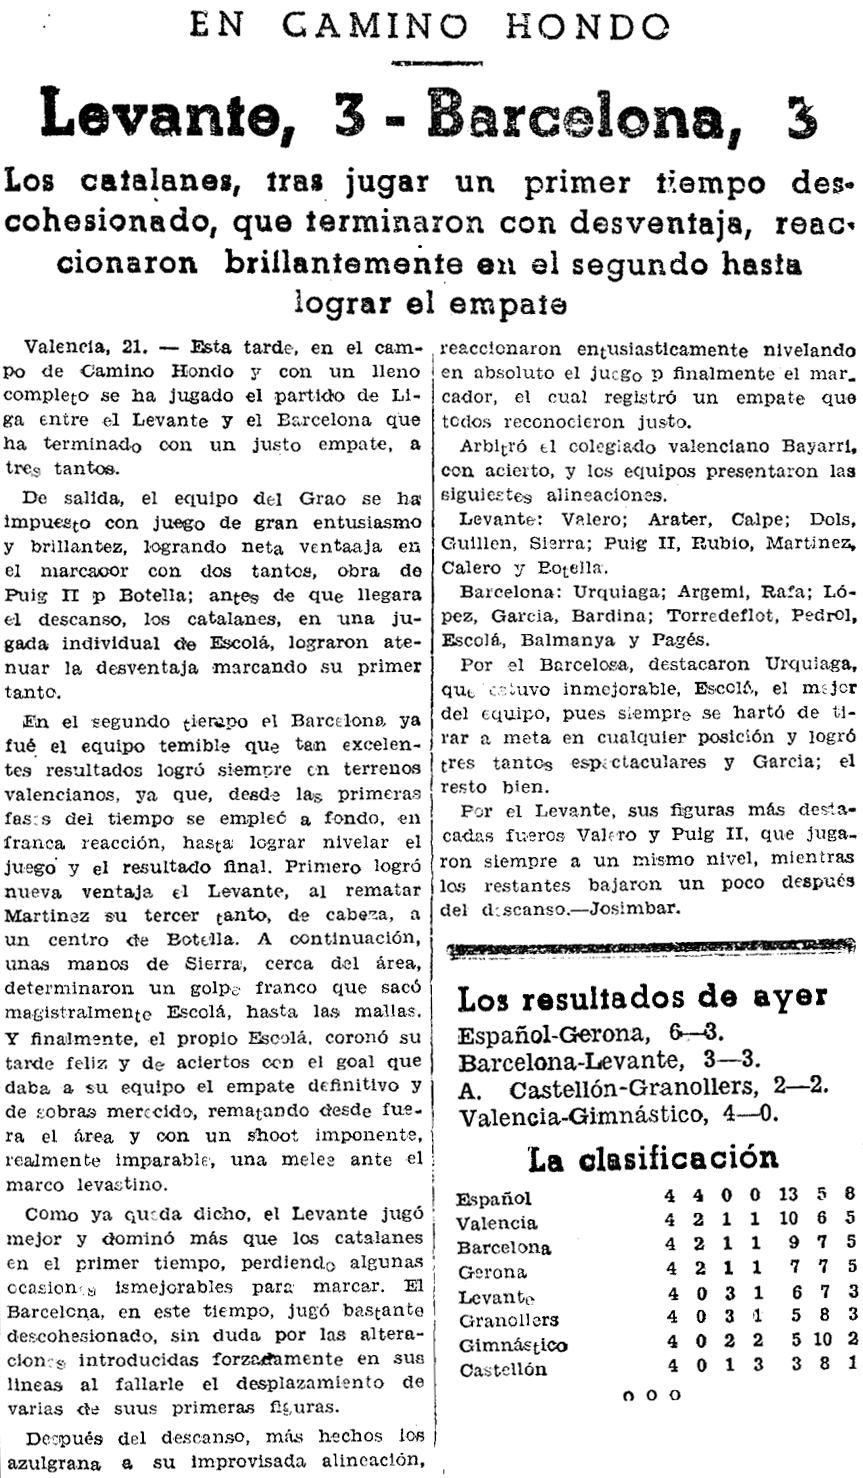 1937.02.21 (21 февраля 1937), Леванте - Барселона, 3-3.png